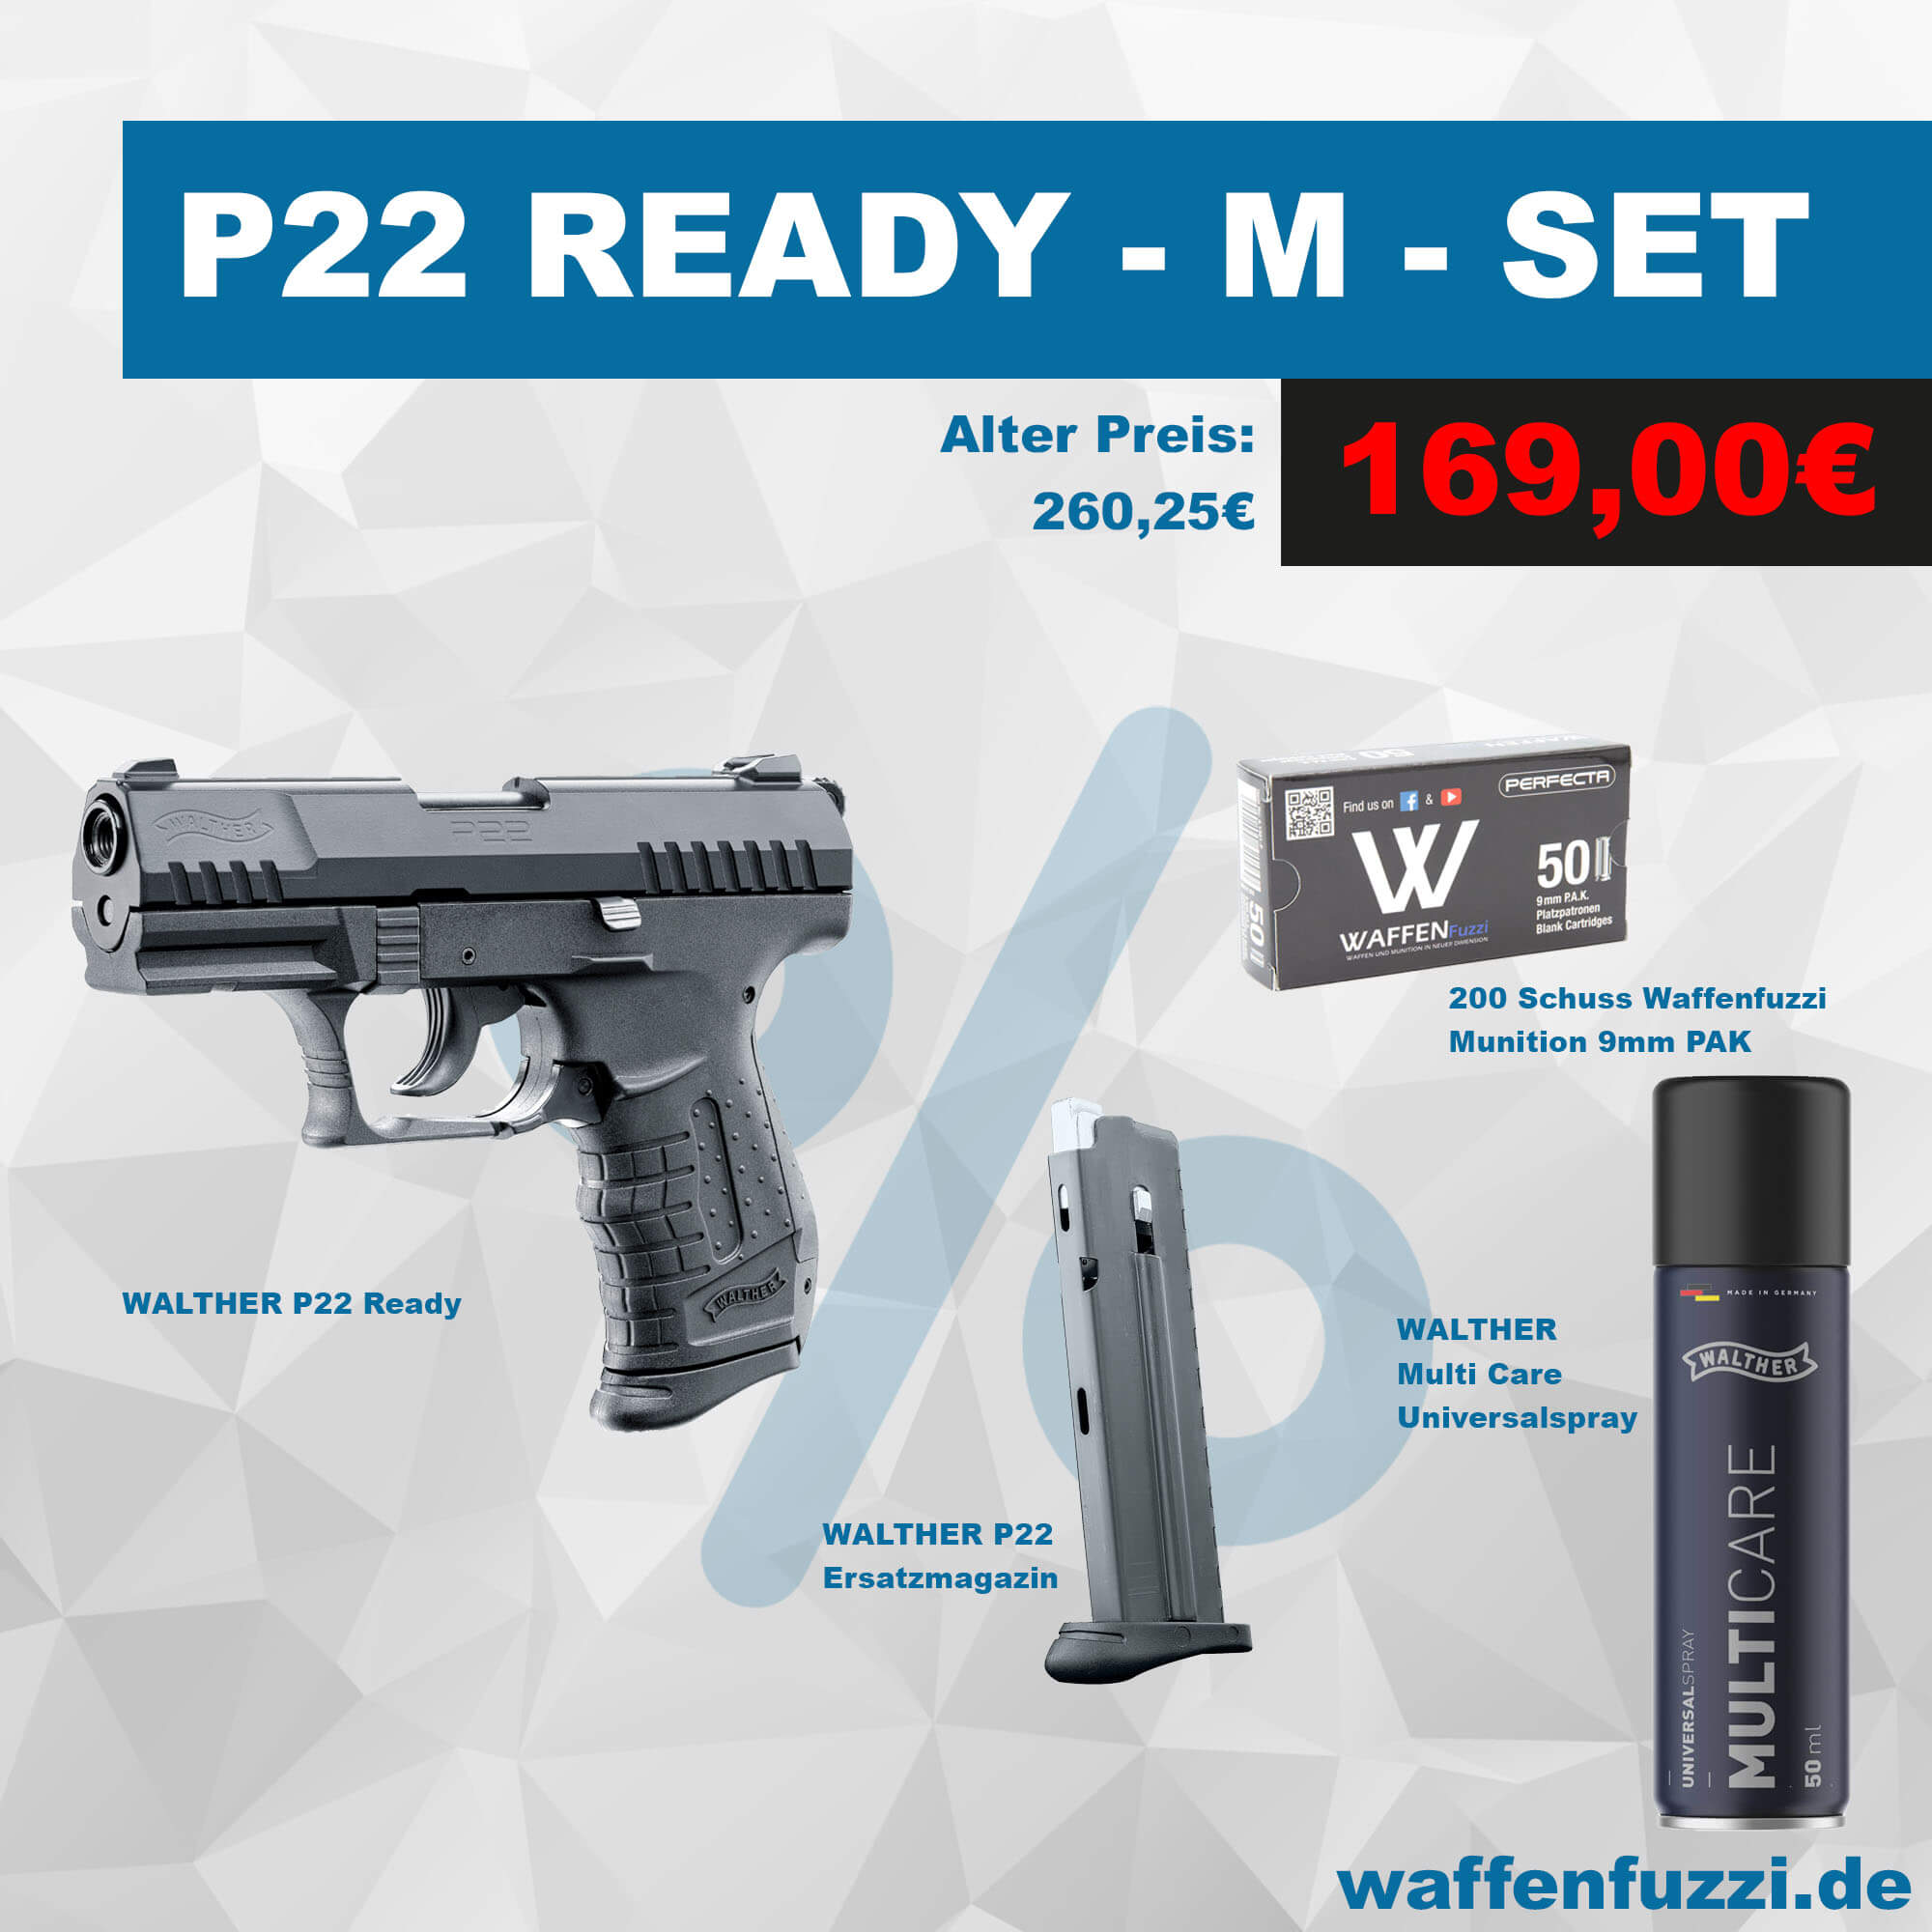 Waffenfuzzi Walther P22 Ready Sparset für unschlagbare 169 Euro